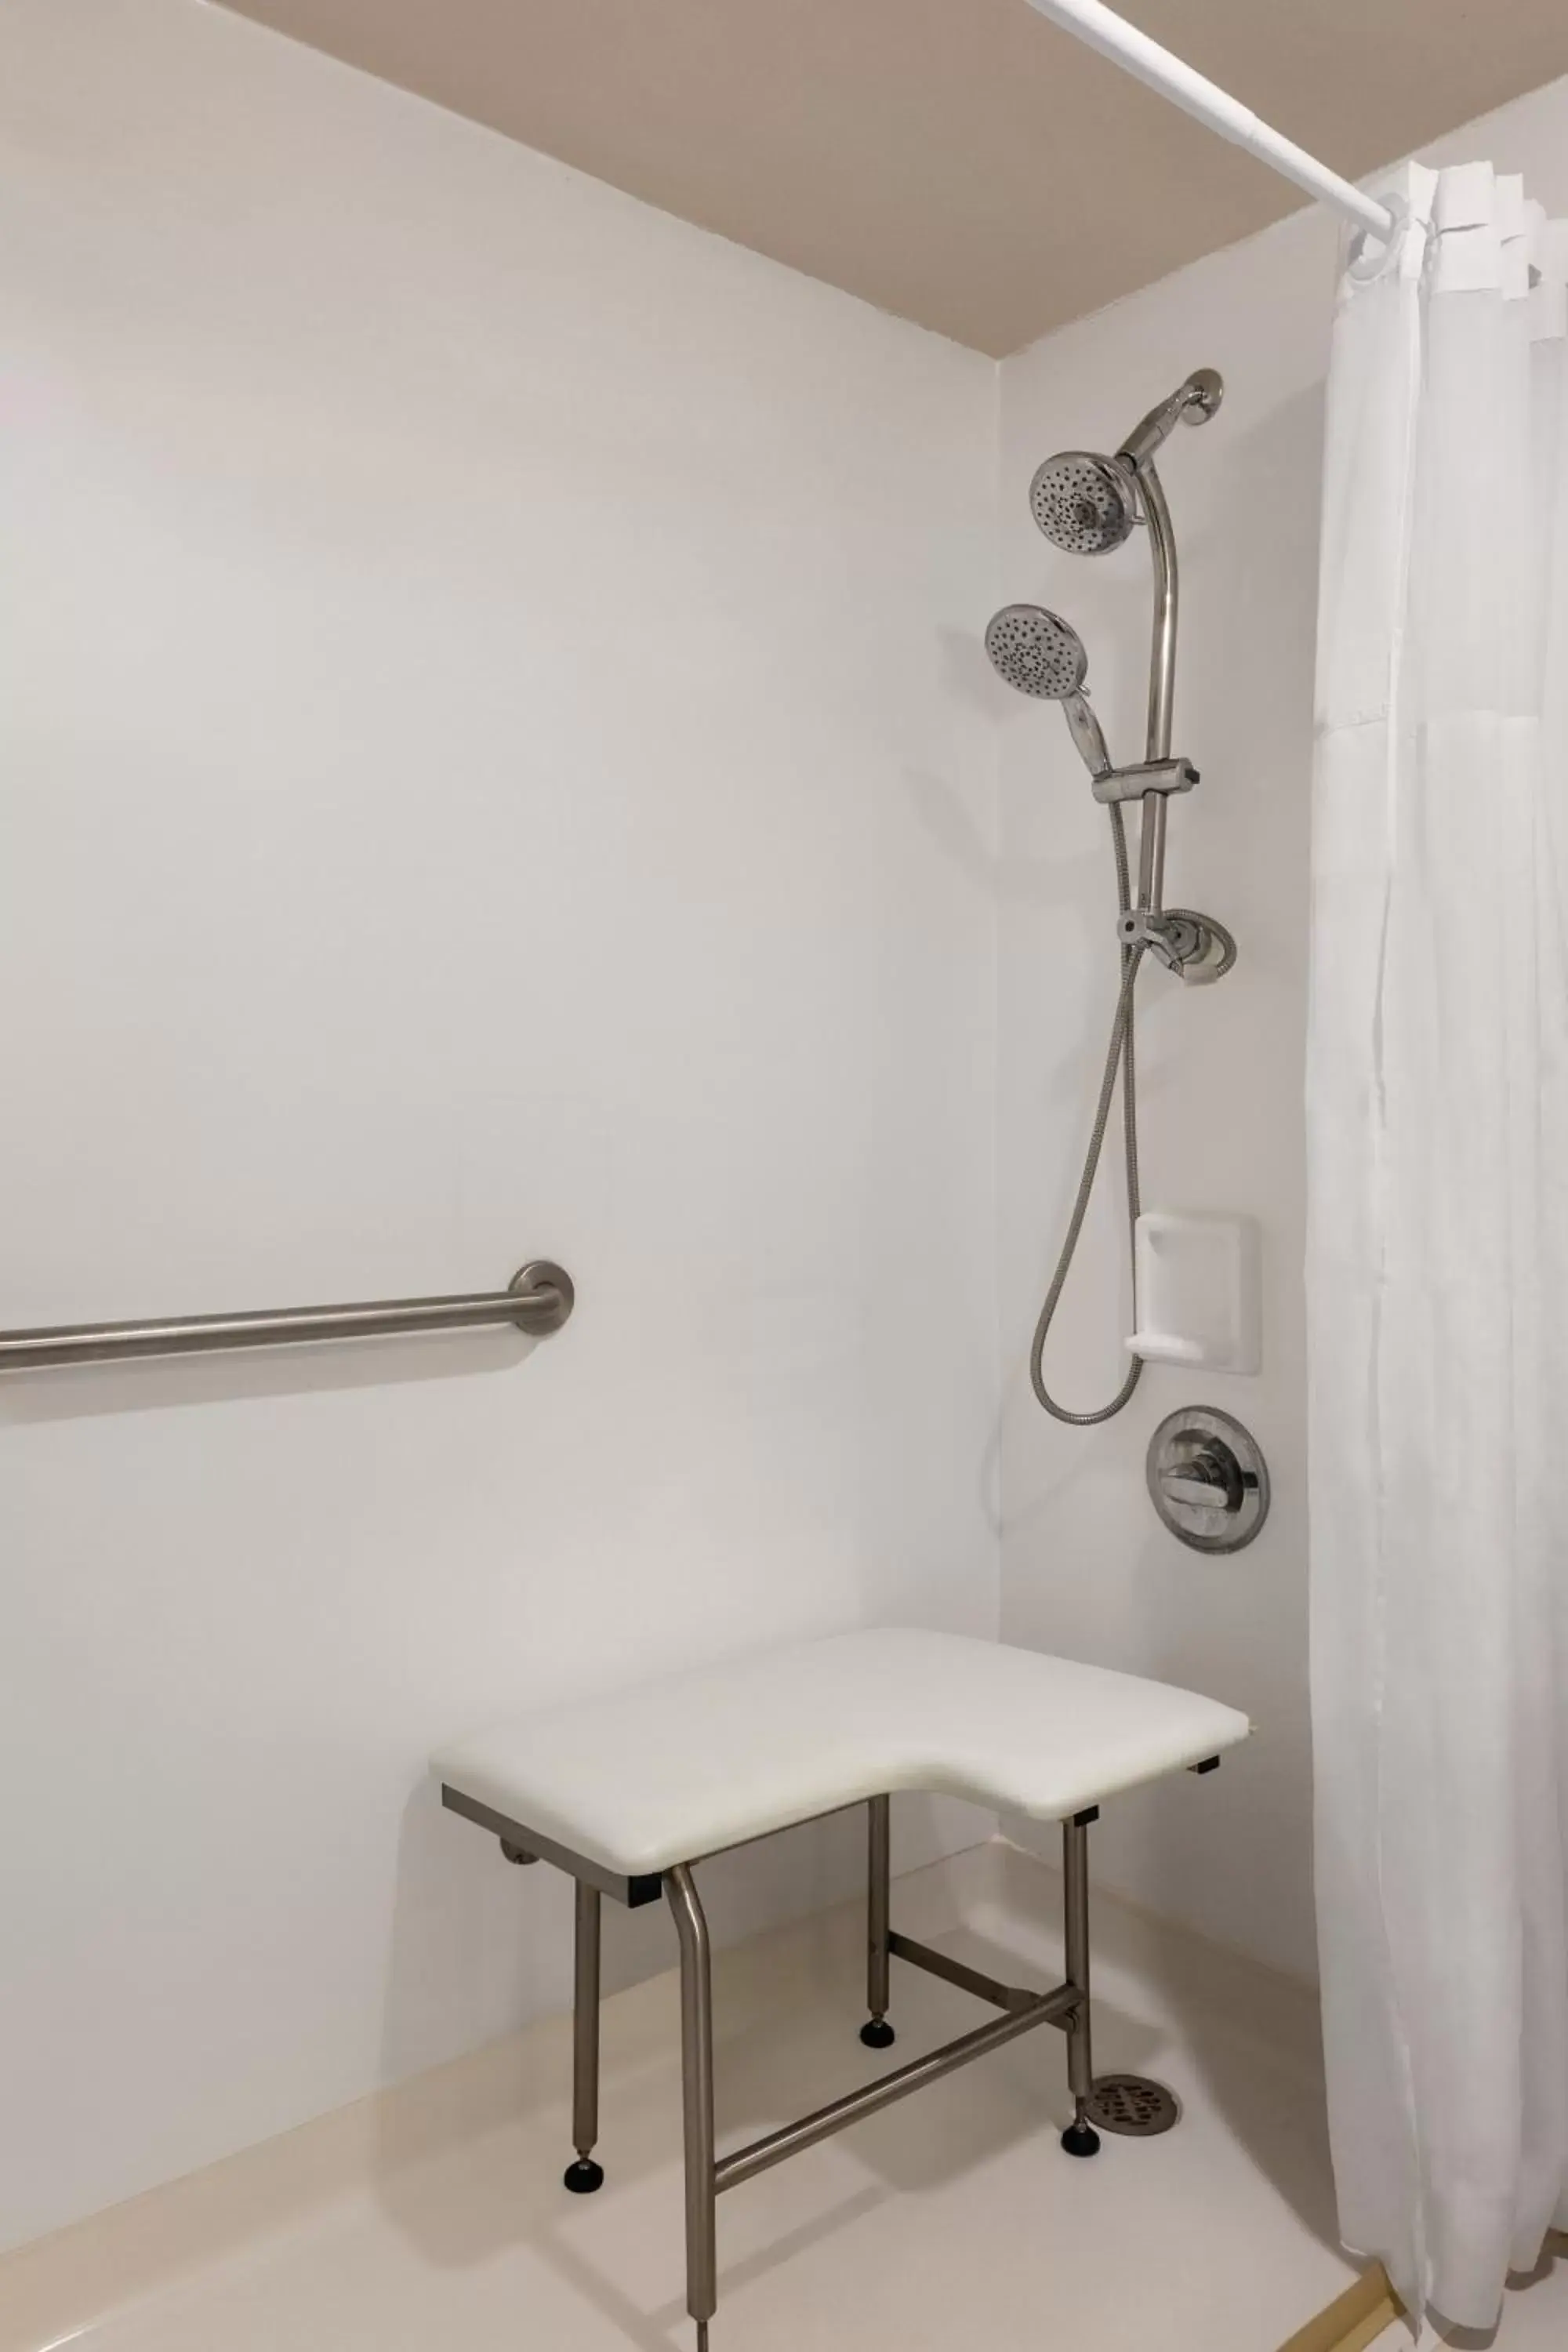 Bathroom in Days Inn by Wyndham Miami International Airport